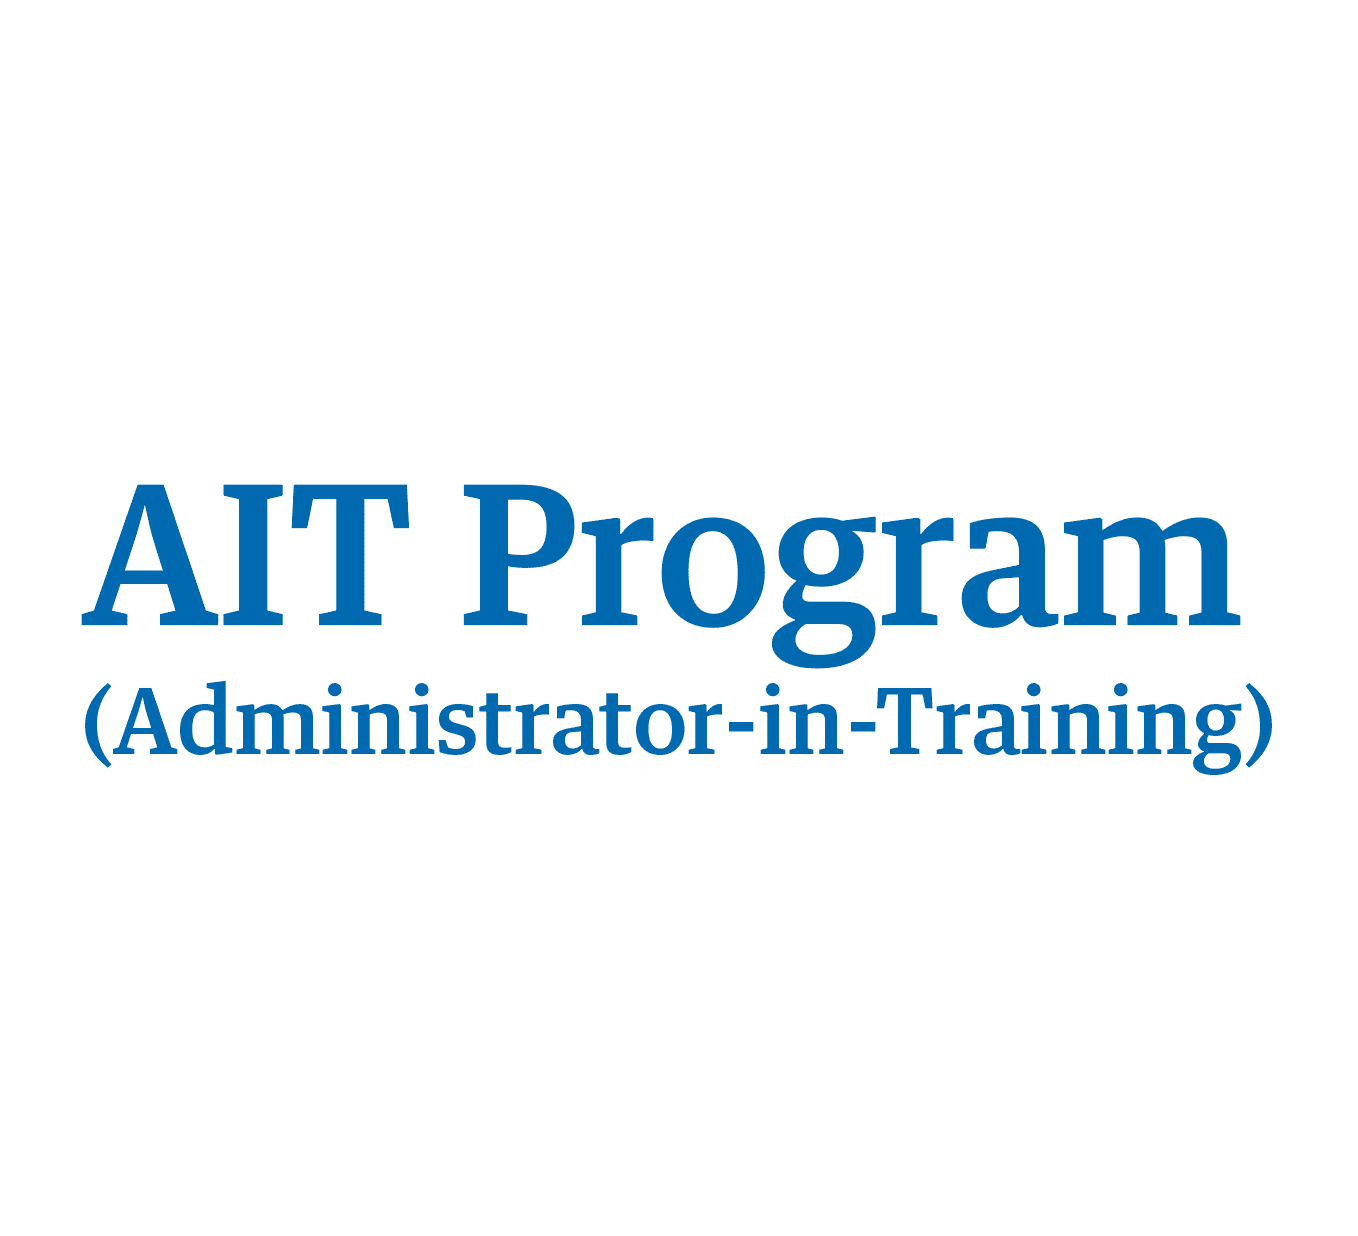 AIT Program